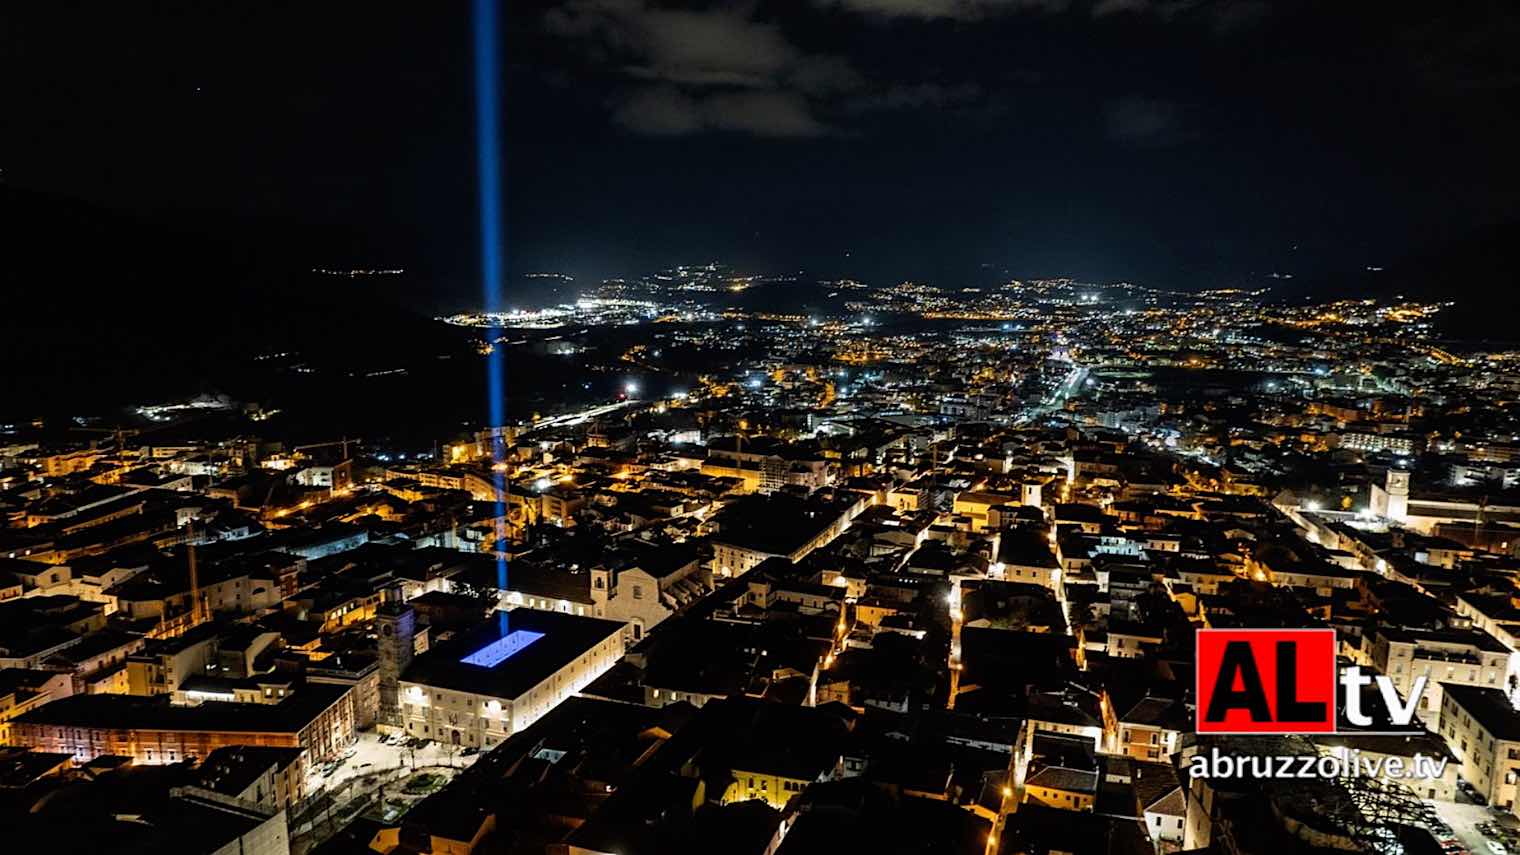 Terremoto 2009. L'Aquila accende fascio di luce in memoria delle vittime